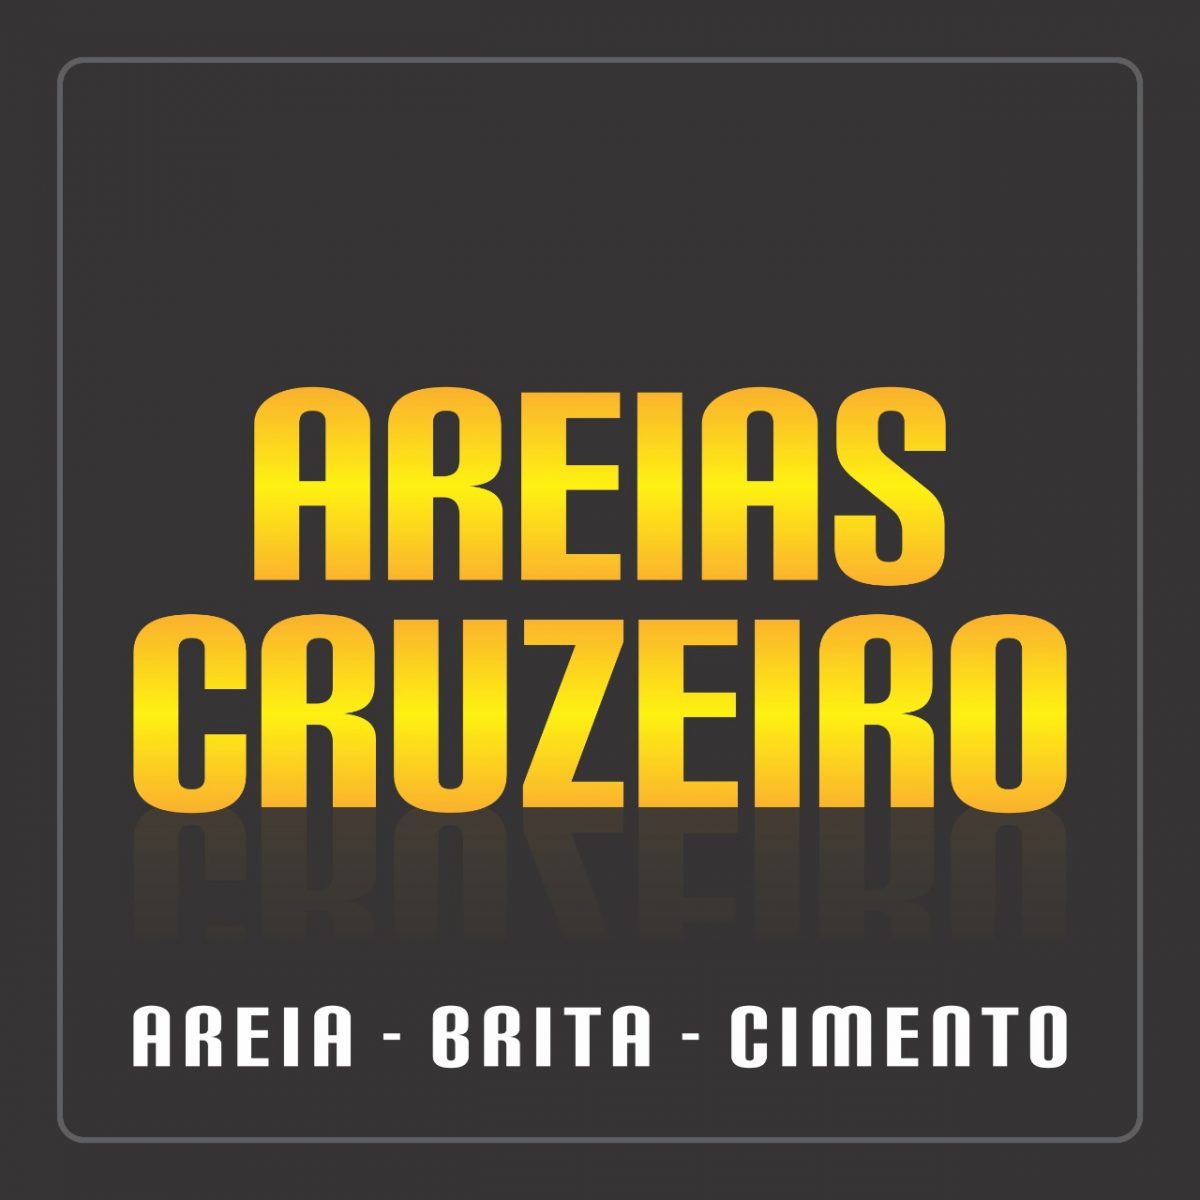 Areias Cruzeiro